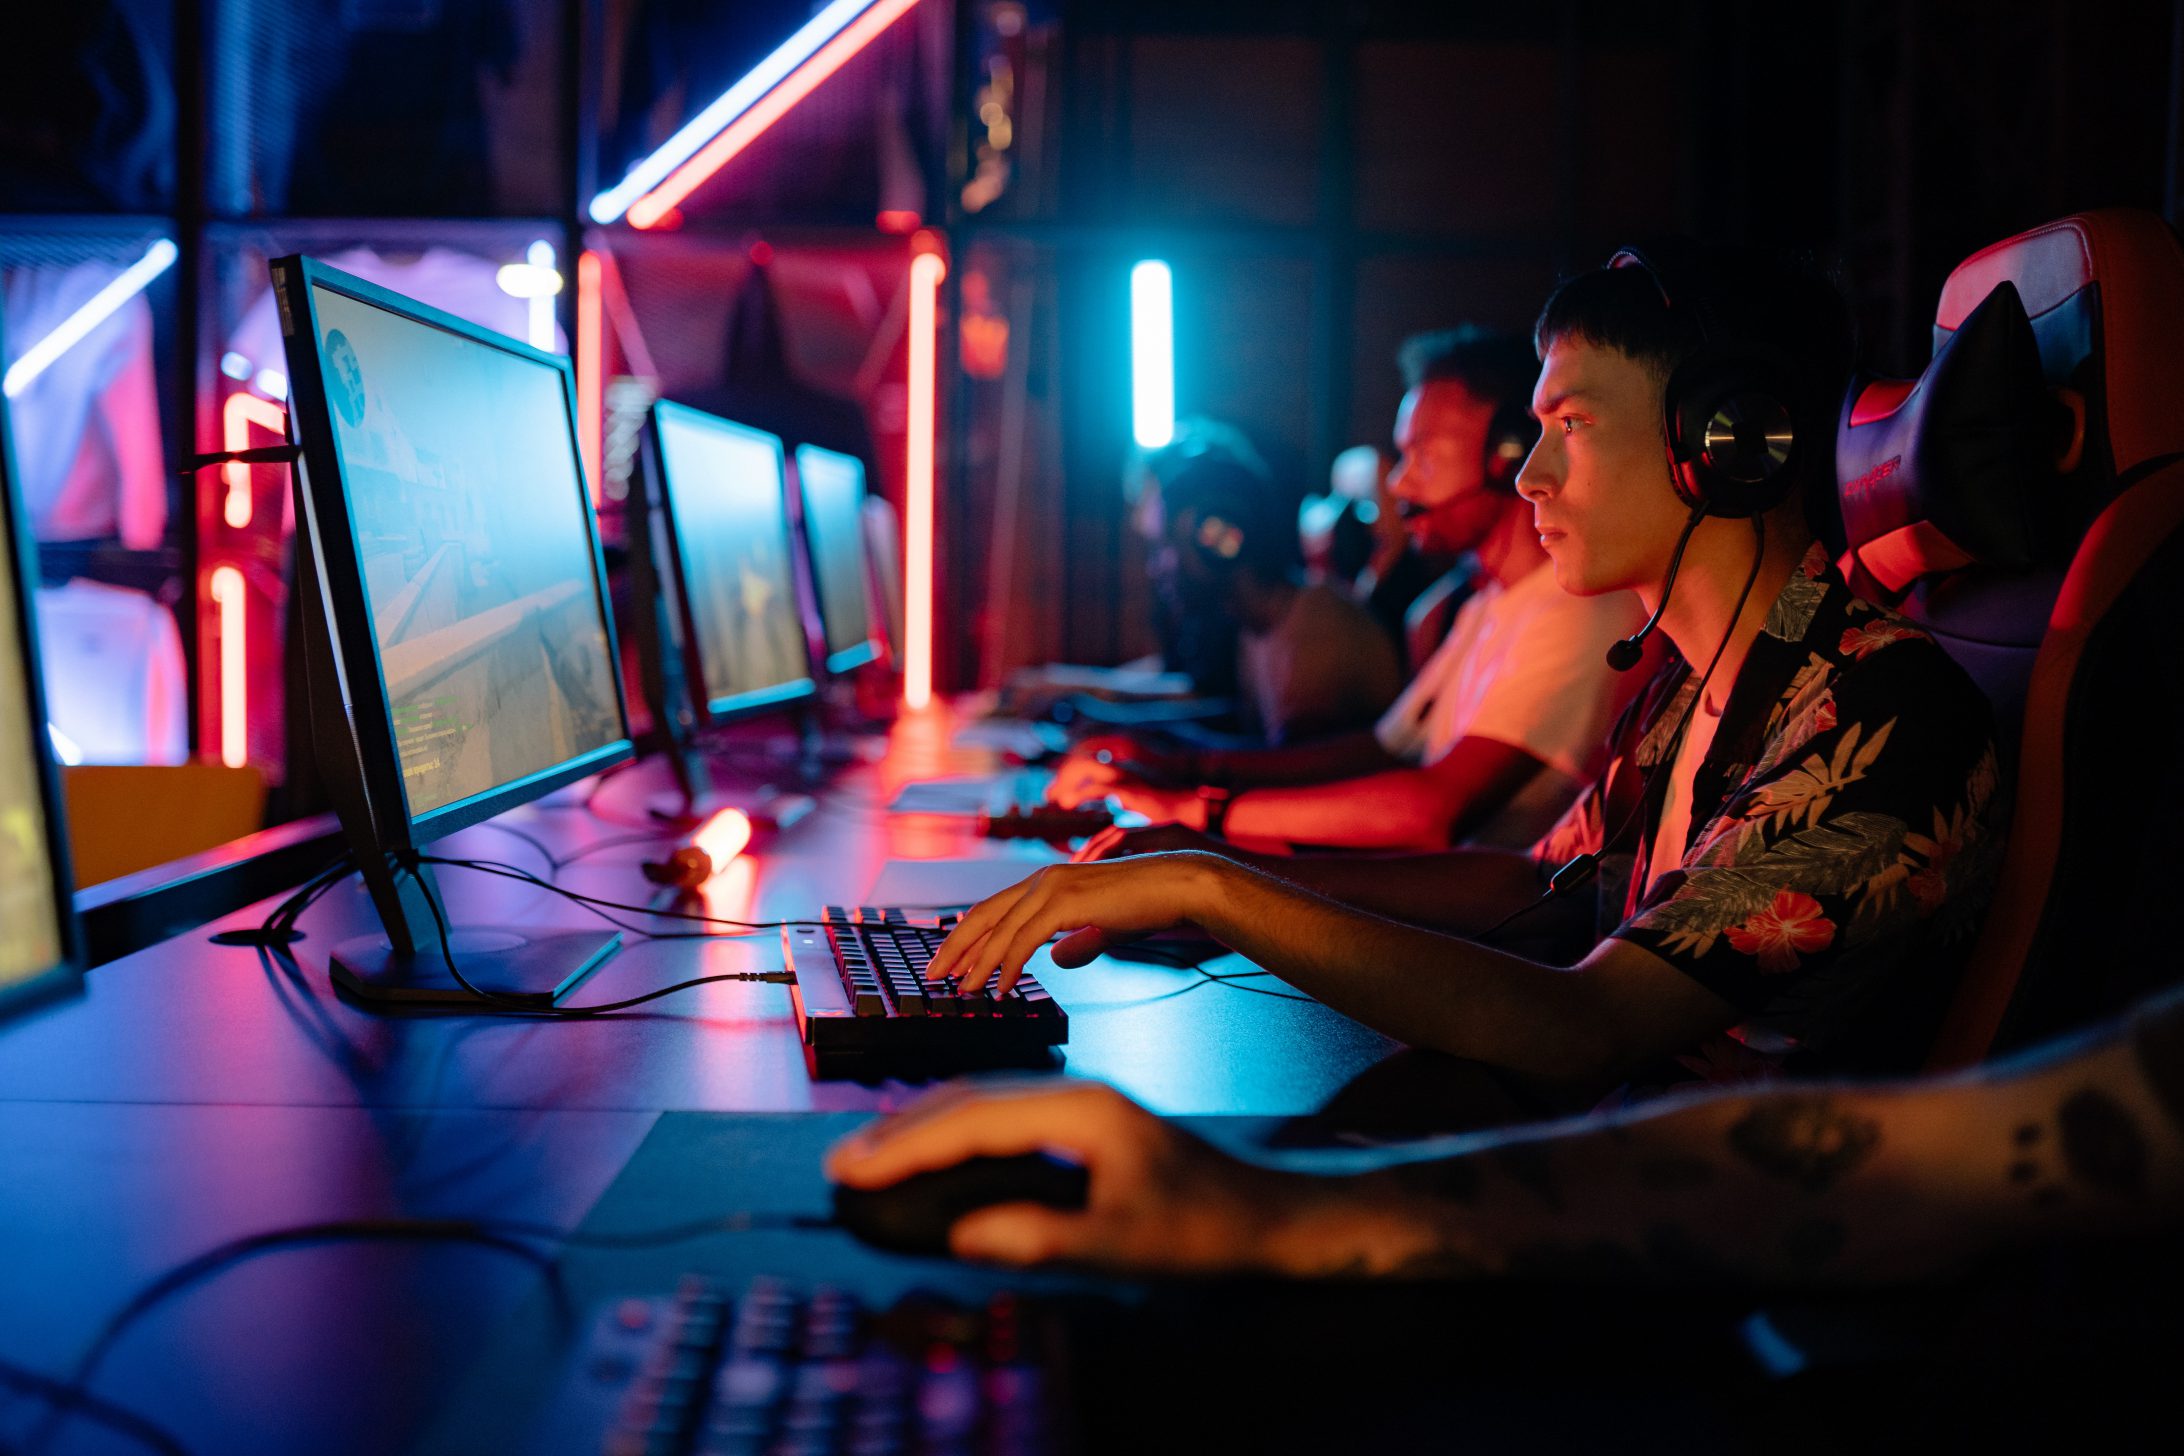 Des hommes dotés de casques audio, jouant au jeu vidéo sur un ordinateur fixe